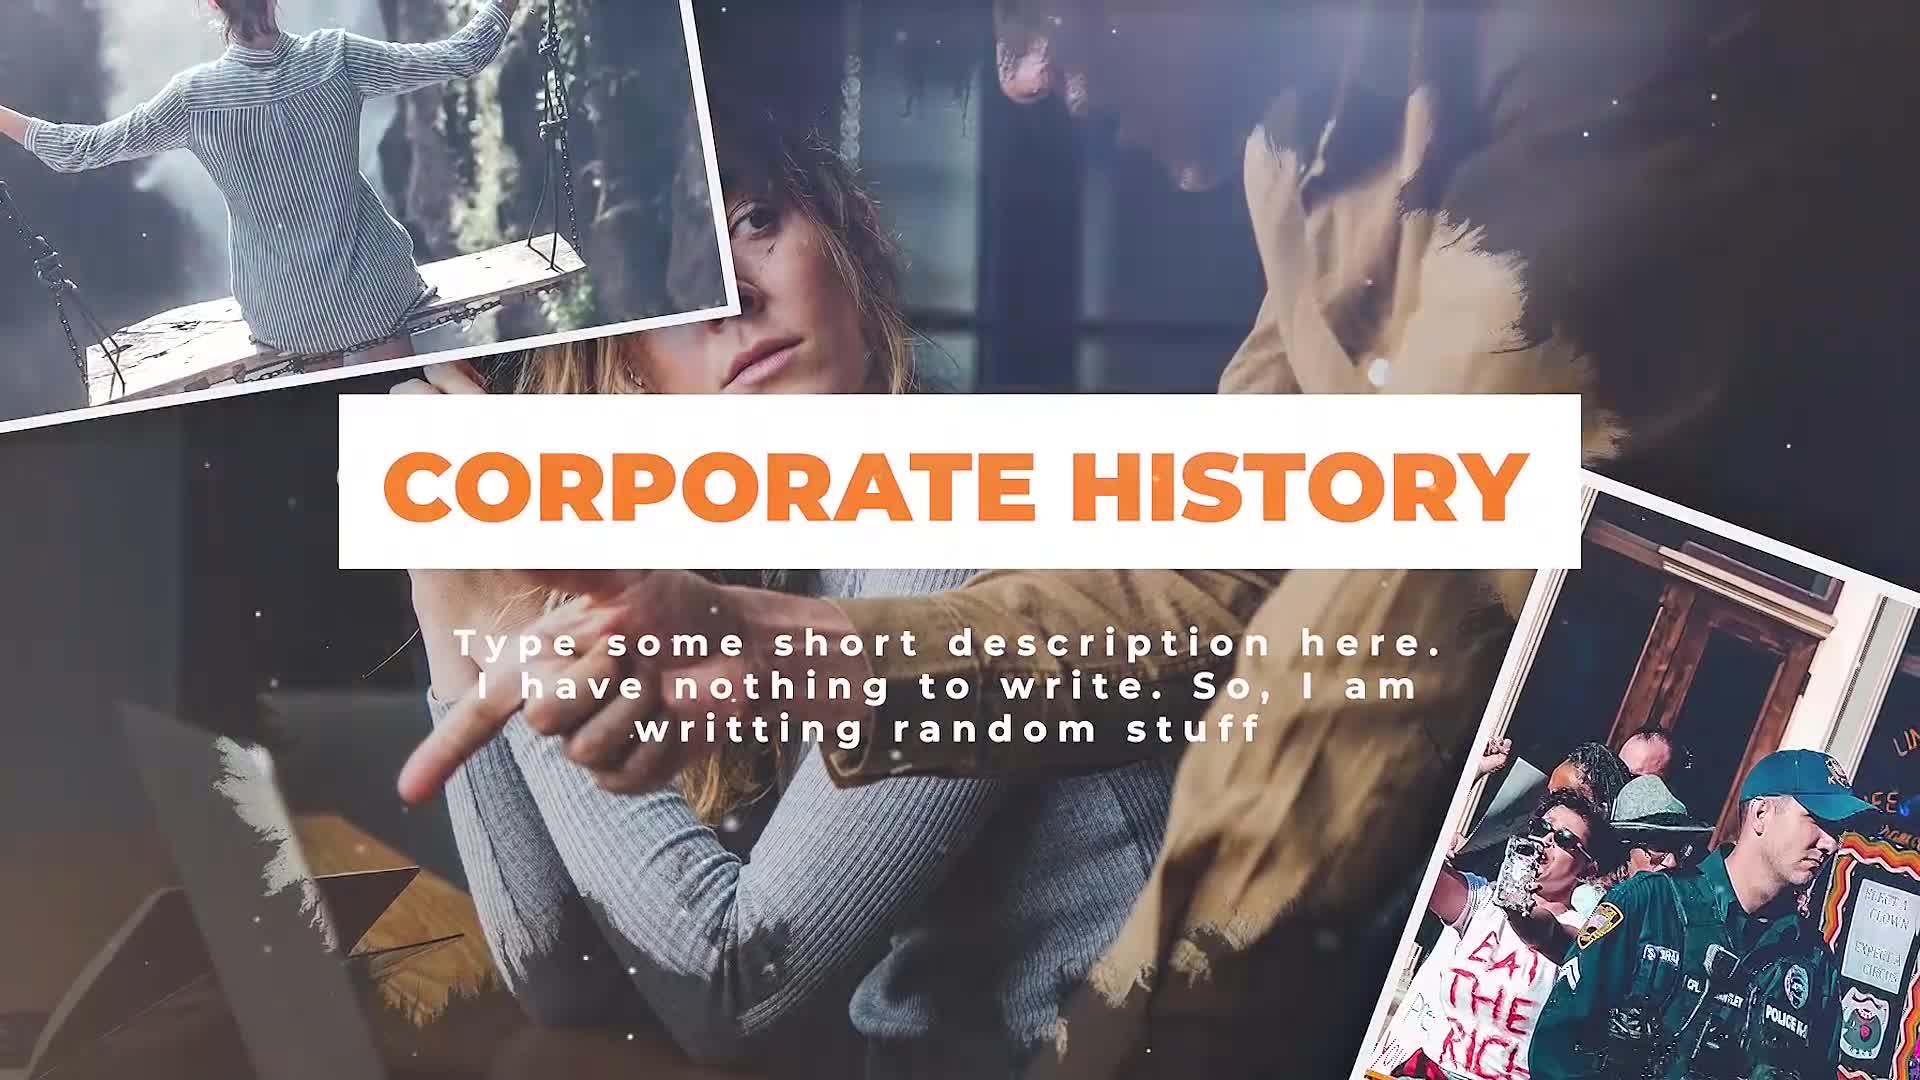 Corporate History Videohive 23649373 Premiere Pro Image 1